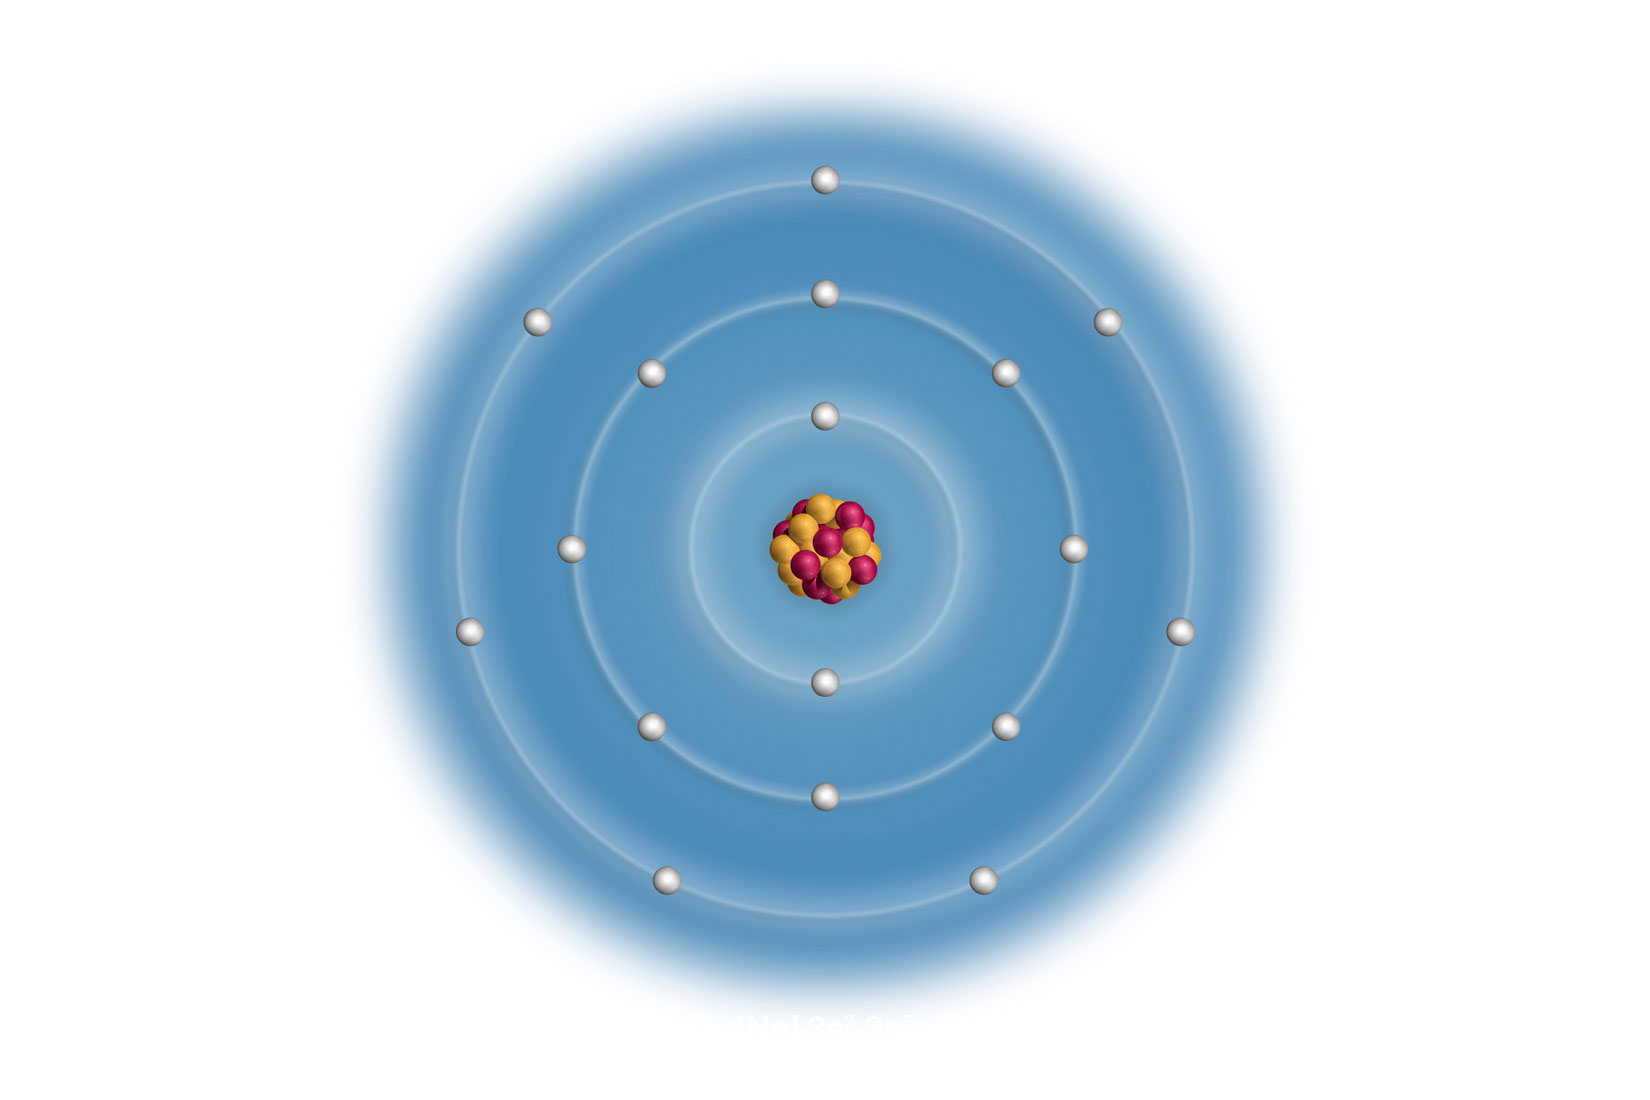 Klor, shematski prikaz građe atoma; U sredini je prikazana jezgra (žute i crvene kuglice), elektroni se kreću po koncentričnim krugovima. Pozadina je plave boje.